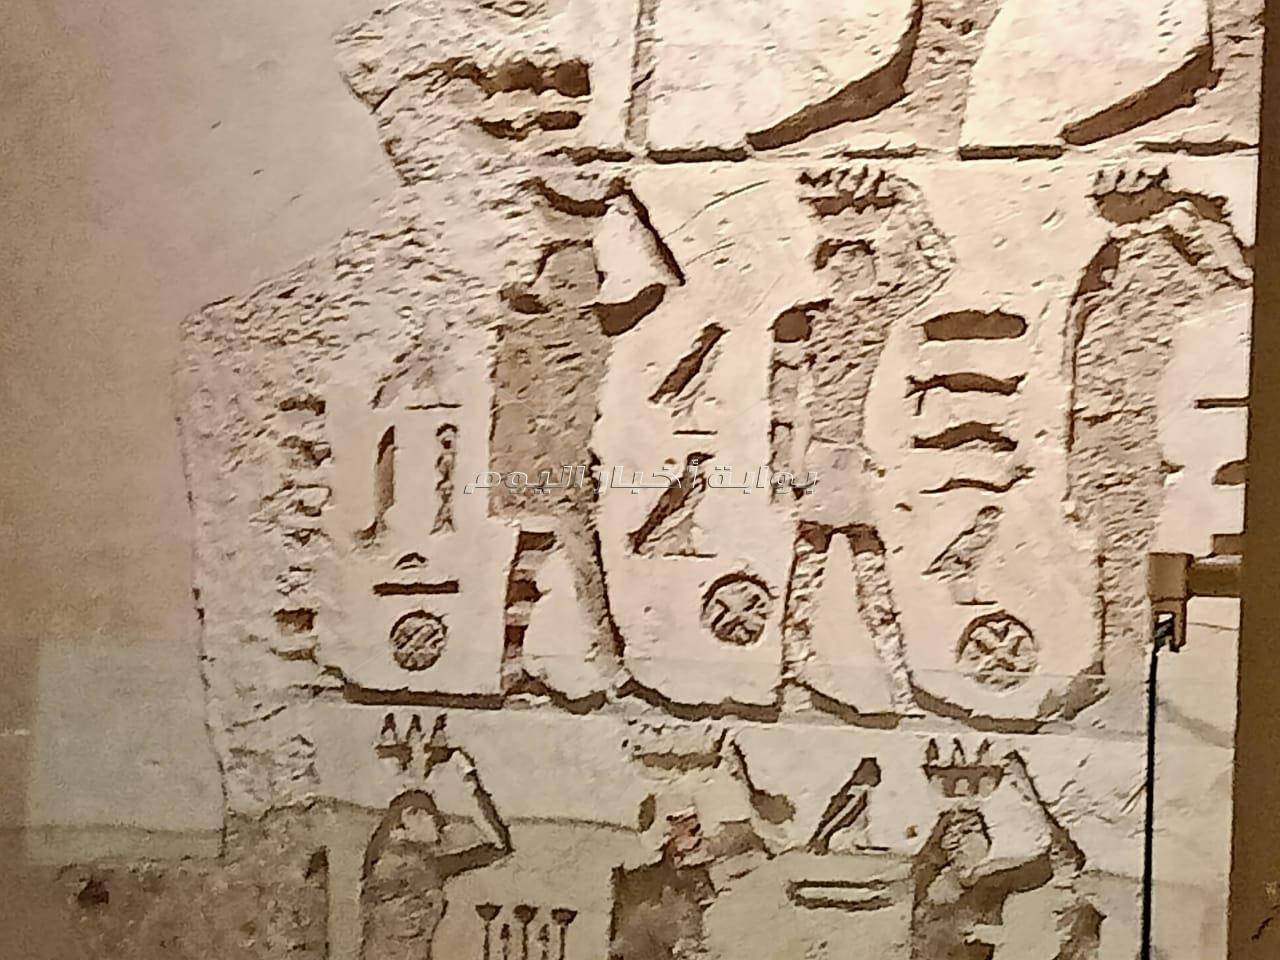 مشروع تطوير سيناريو العرض المتحفي في المتحف المصري بالتحرير  